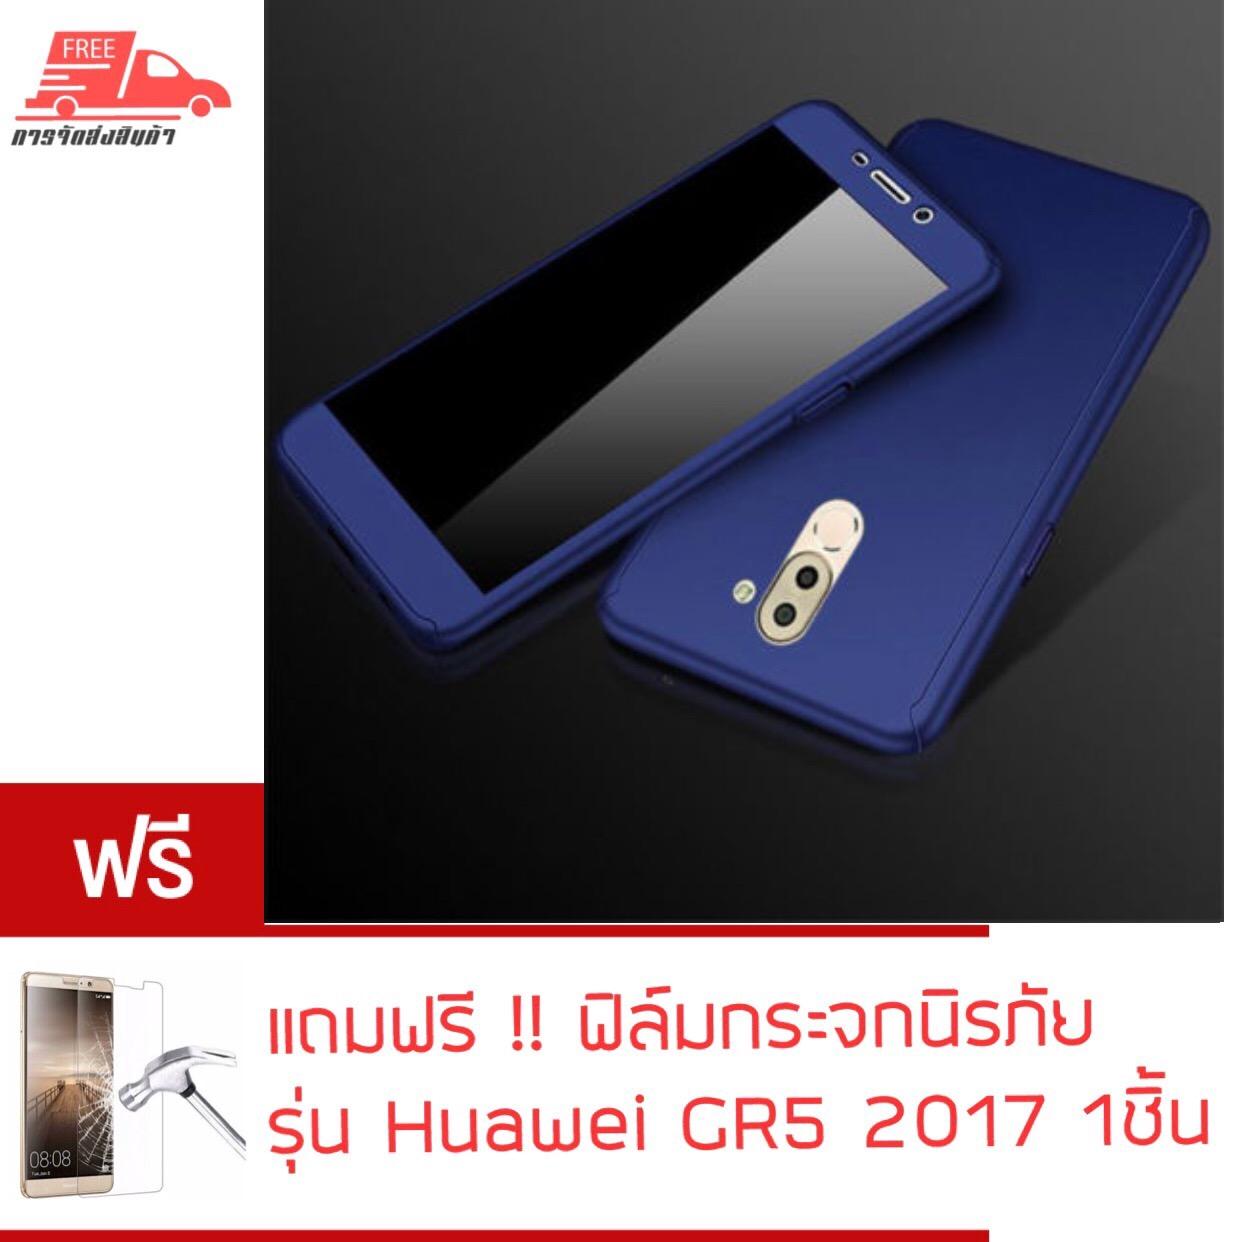 Case Huawei GR 5 2017 เคส หัวเว่ย จีอาร์ 5 2017เคสประกบ 360 องศา สวยและบางมาก Huawei GR 5 2017 Case 360 เคสประกบ สินค้าใหม่